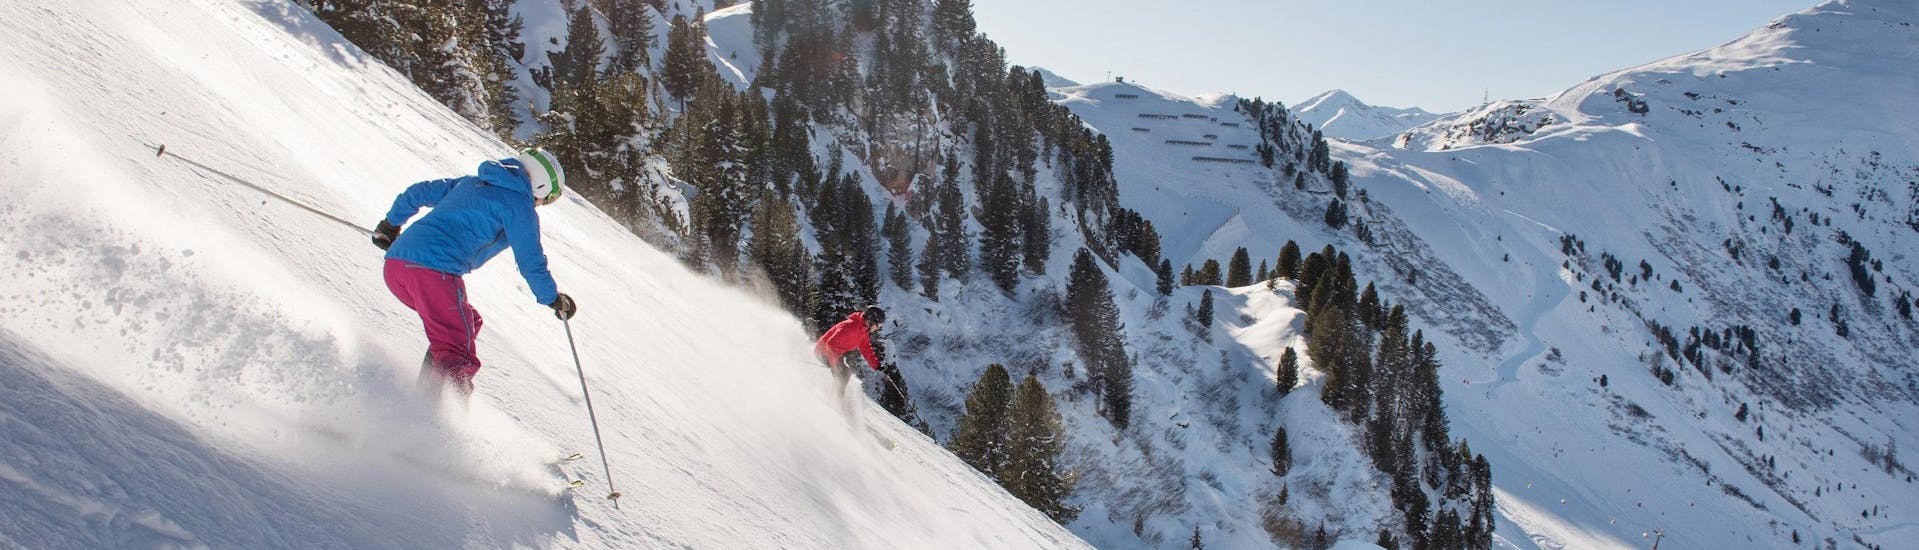 Vue sur un paysage de montagne ensoleillé lors d'un cours de ski avec l'une des écoles de ski de la station de ski Mayrhofen.